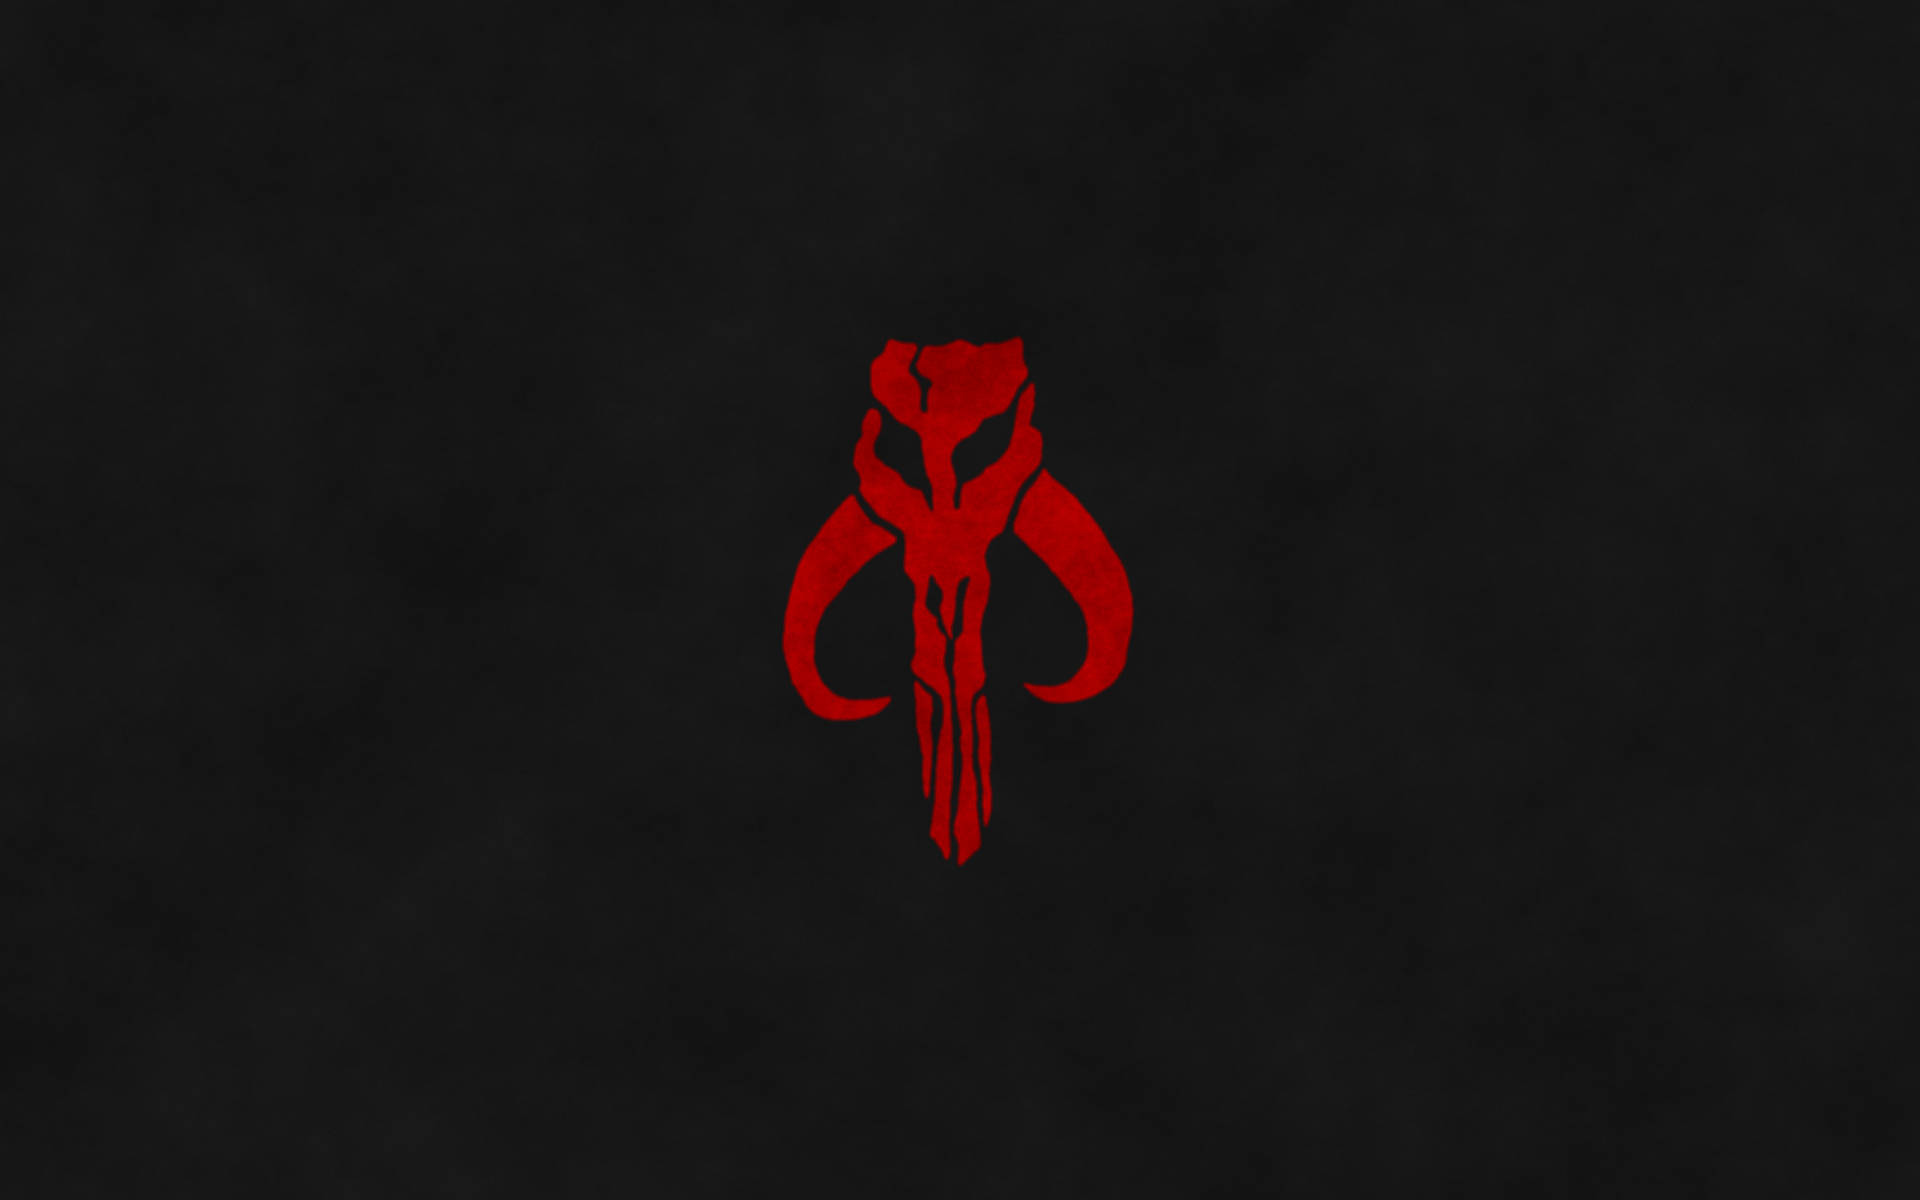 The Mandalorian Symbol Background